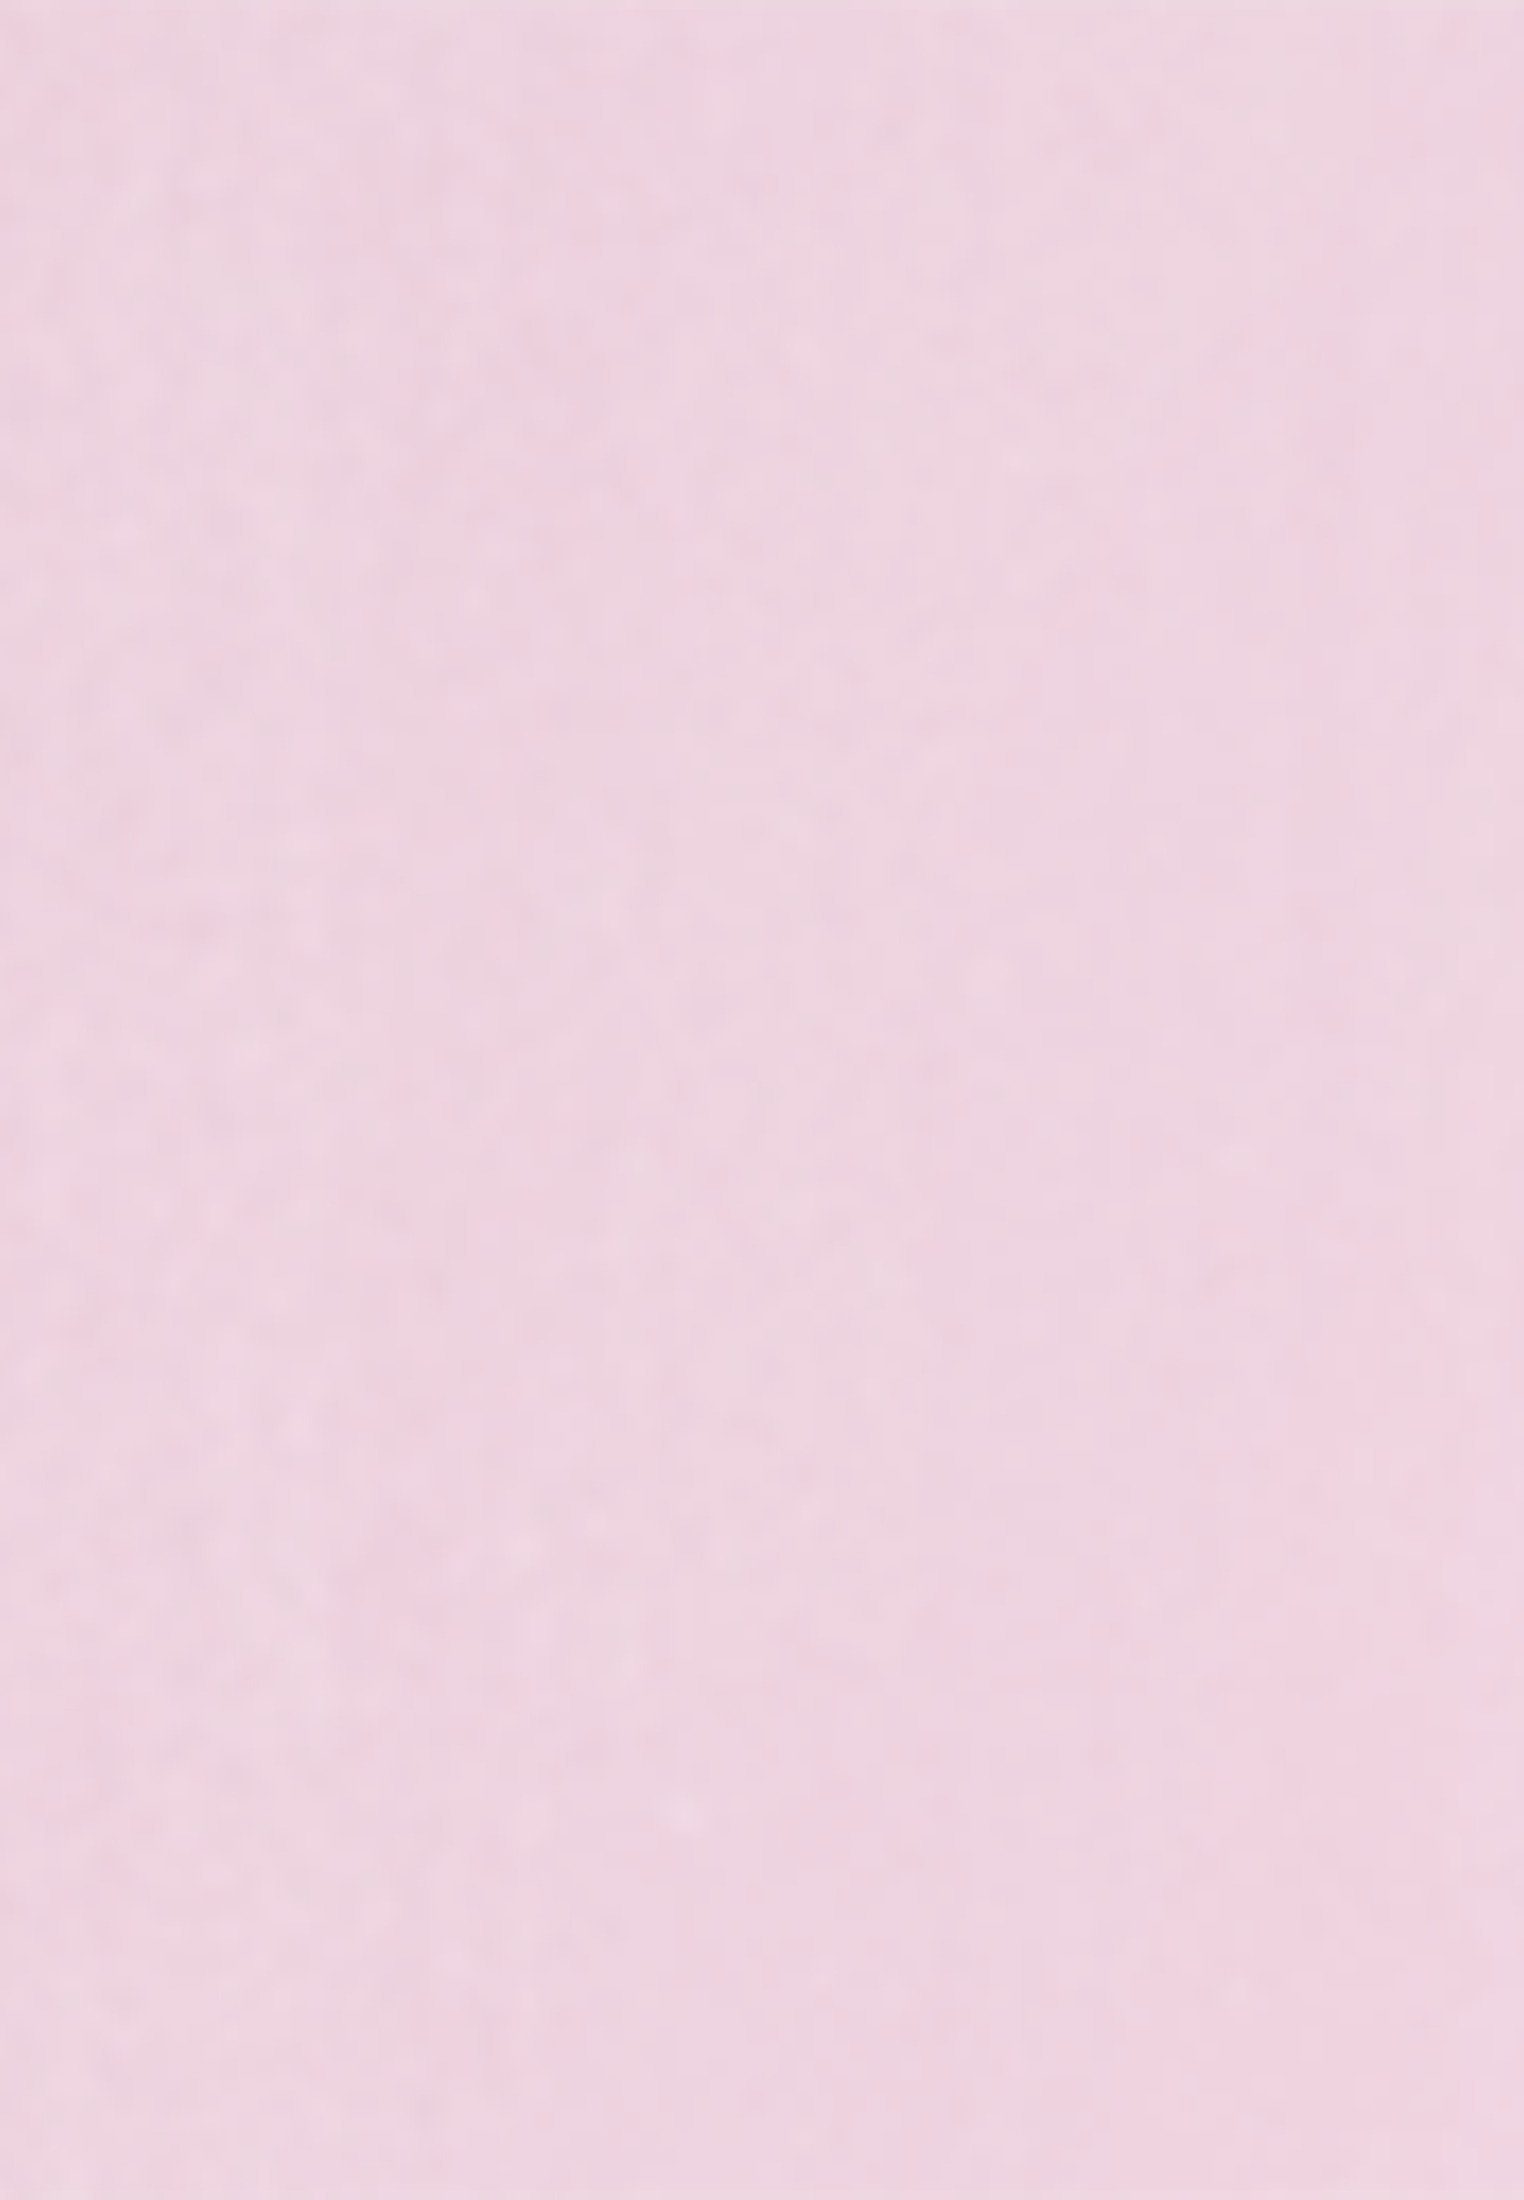 Schwarze Rose Kragen Rosa/Pink Hemdbluse Kurzarm seidensticker Uni